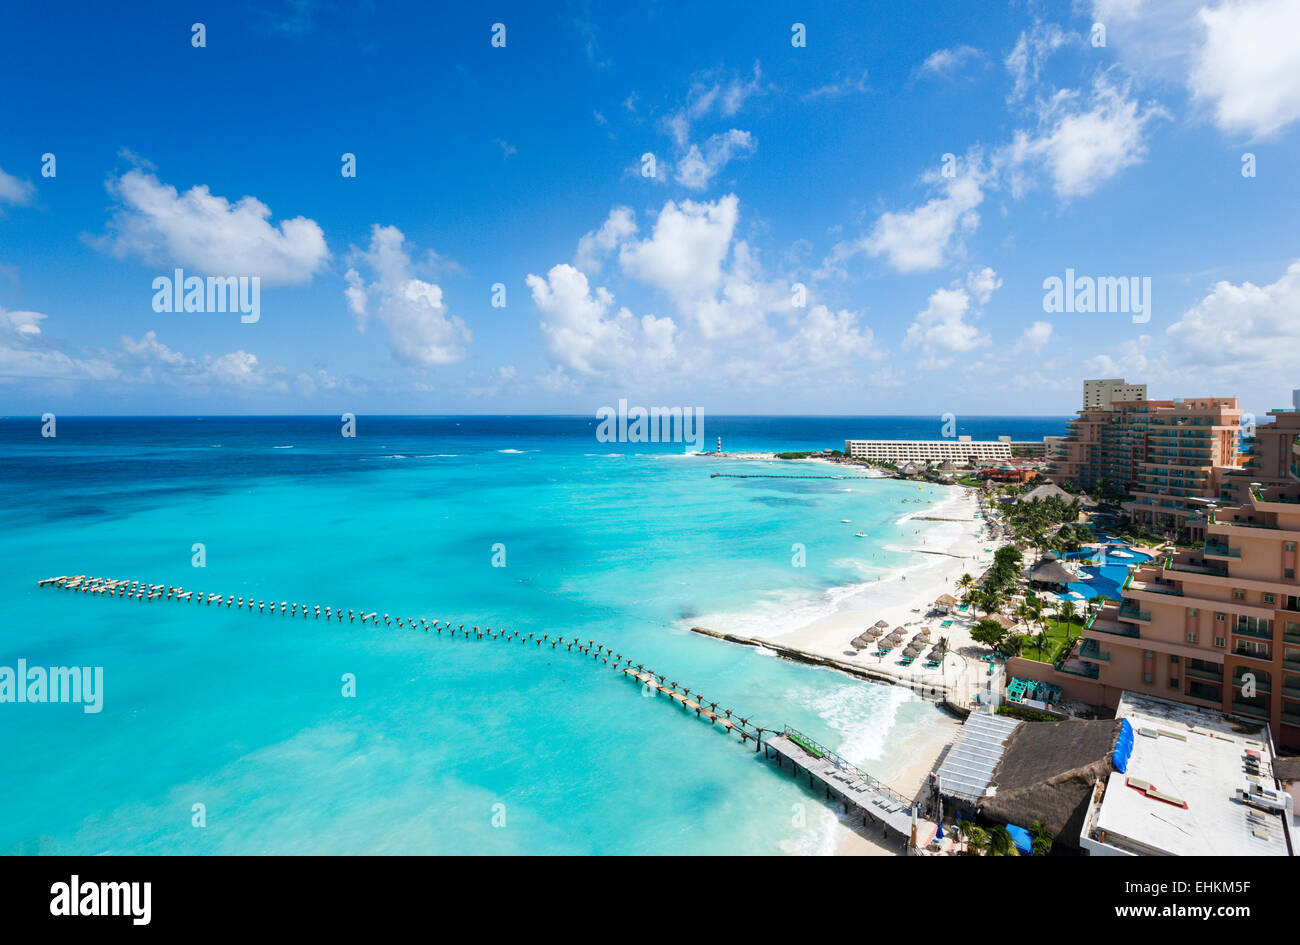 Rooftop view of the beach near the Riu Cancun Hotel, Cancun, Yucatan Peninsula, Quintana Roo, Mexico Stock Photo